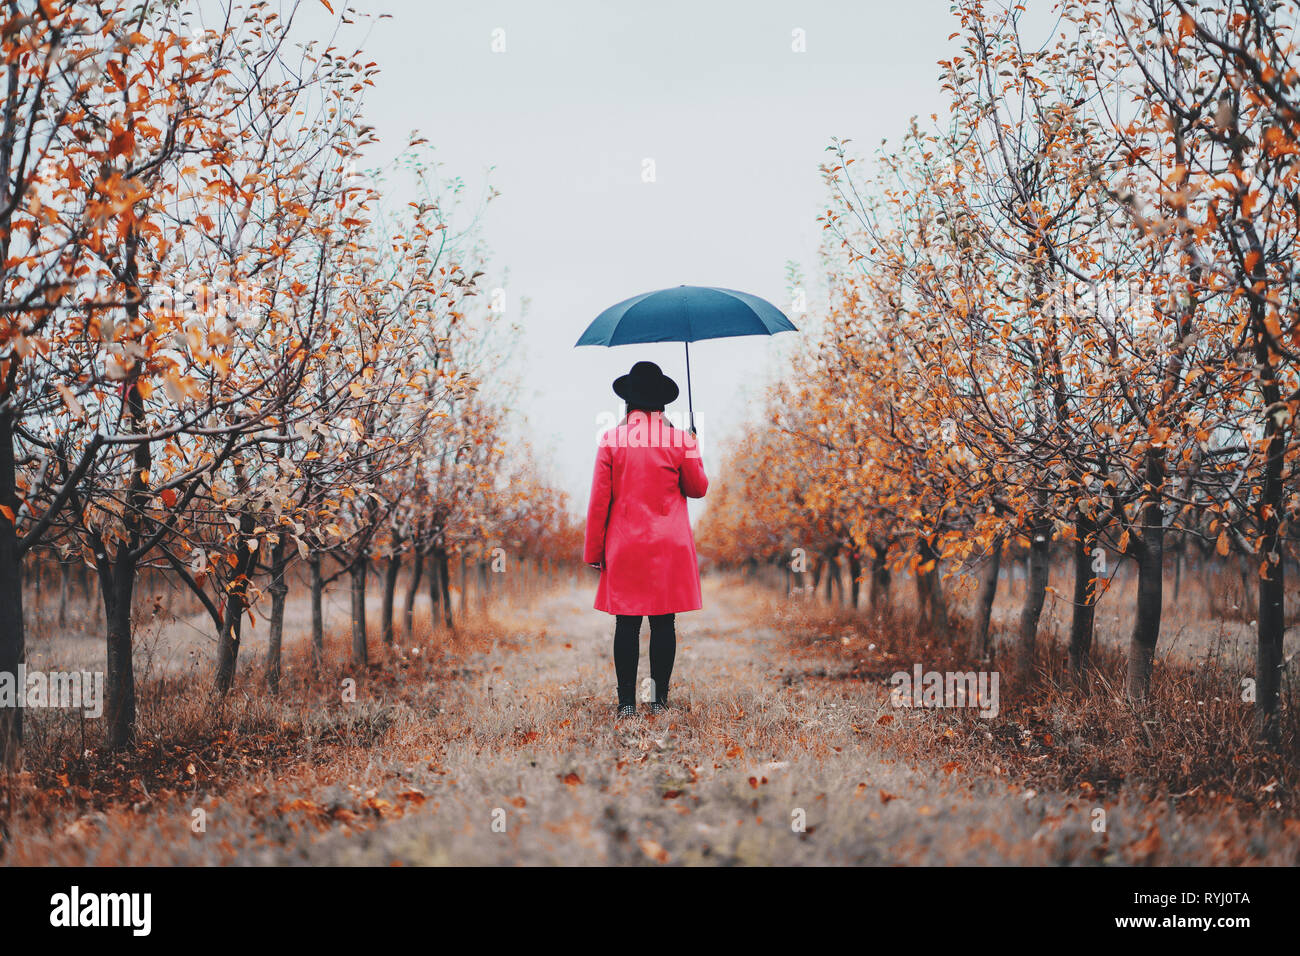 Frau im roten Mantel und mit Regenschirm zwischen Bäumen in Apple Garten im  Herbst. Minimalismus, Reisen, Natur Konzept Stockfotografie - Alamy